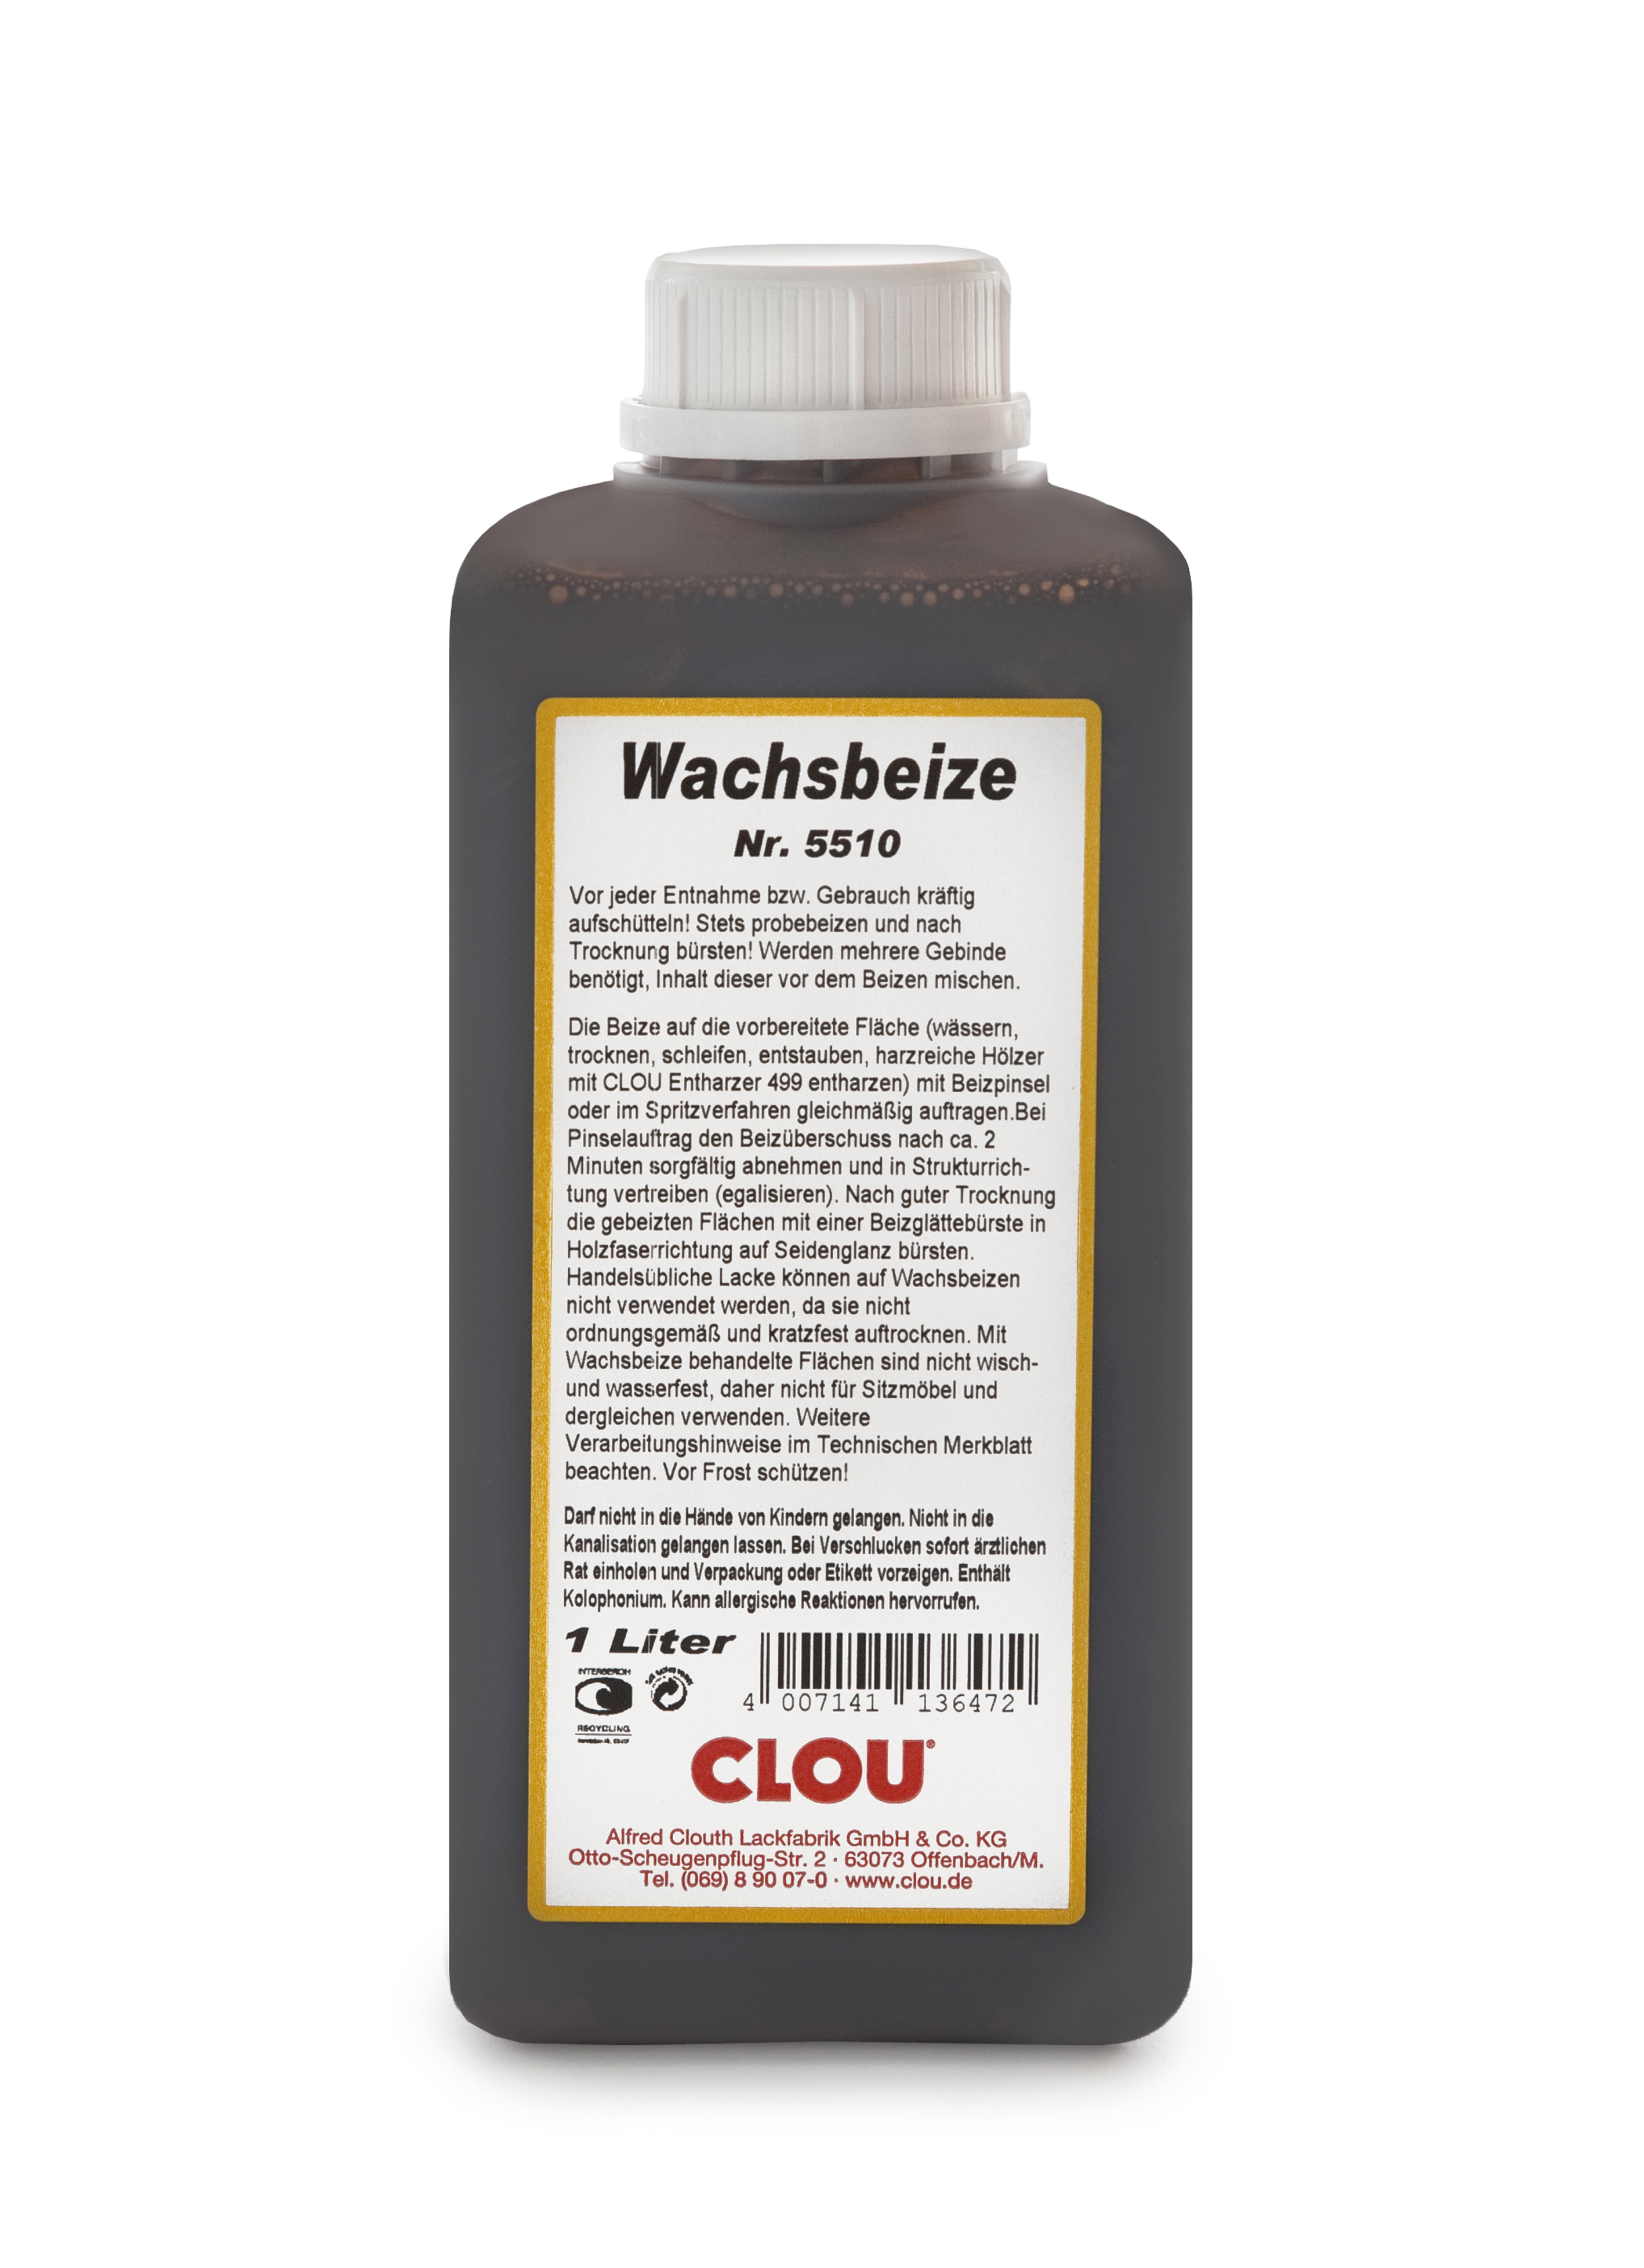 CLOU Wachsbeize 5504 / Flasche a 1 ltr.